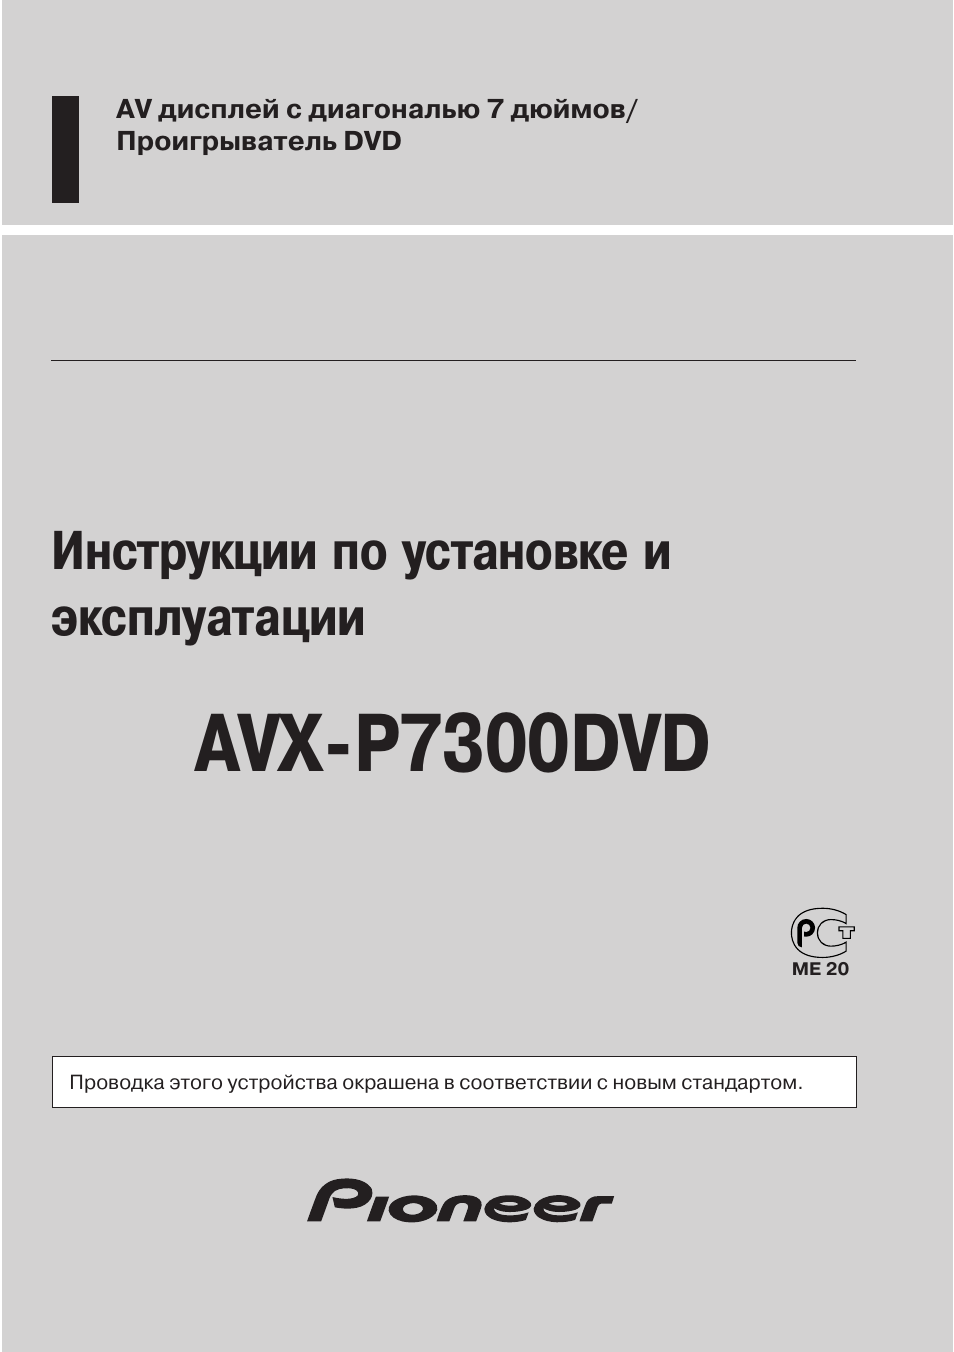 Avx-p7300dvd, Инструкции по установке и эксплуатации | Инструкция по эксплуатации Pioneer AVX-P7300DVD | Страница 2 / 93